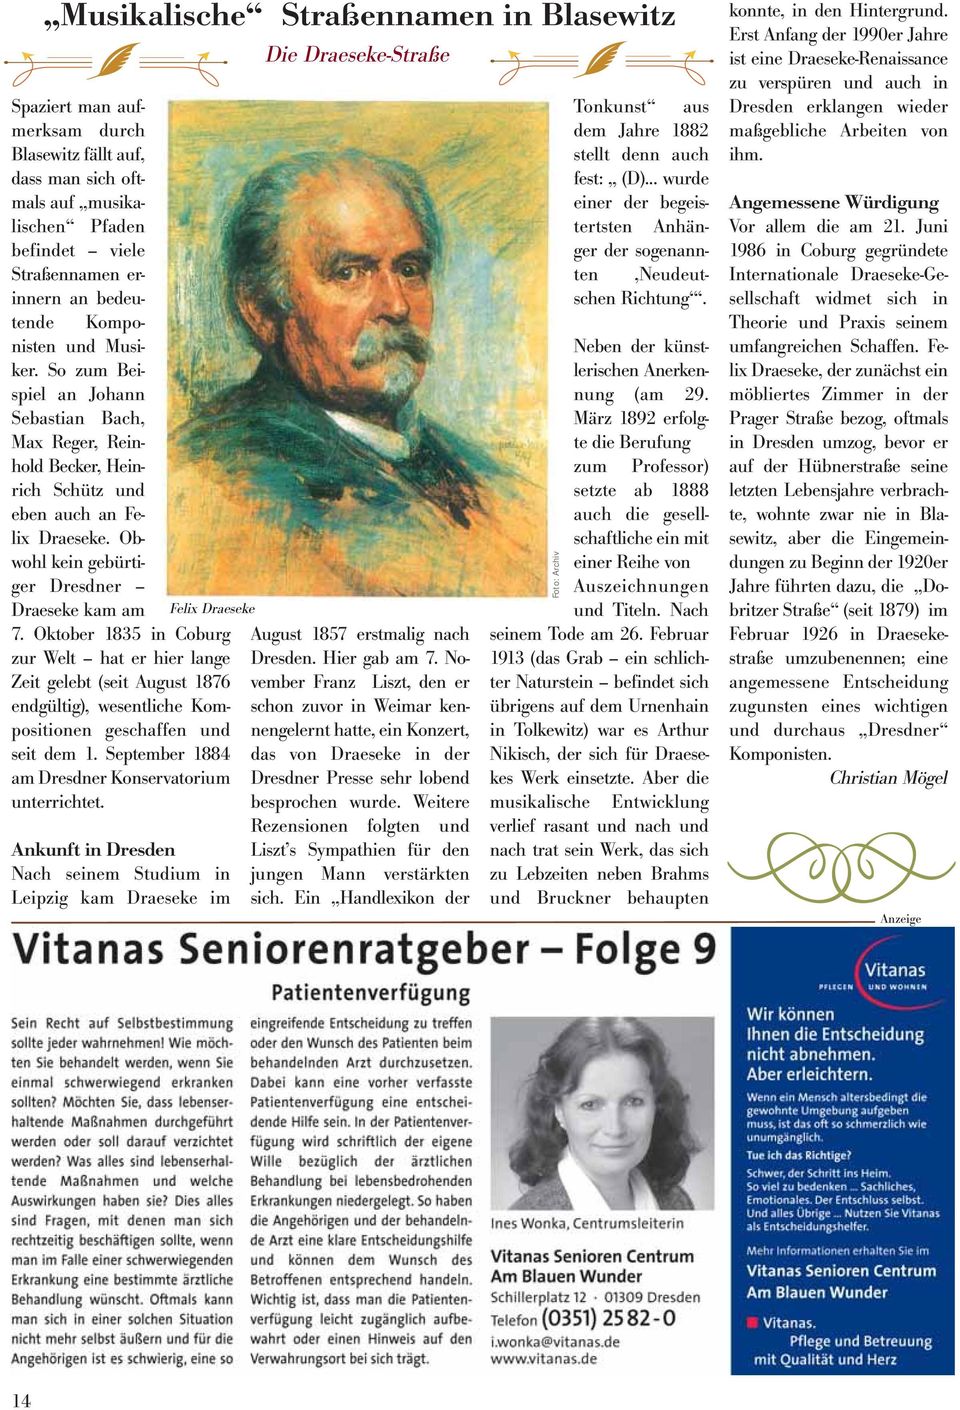 Oktober 1835 in Coburg zur Welt hat er hier lange Zeit gelebt (seit August 1876 endgültig), wesentliche Kompositionen geschaffen und seit dem 1. September 1884 am Dresdner Konservatorium unterrichtet.